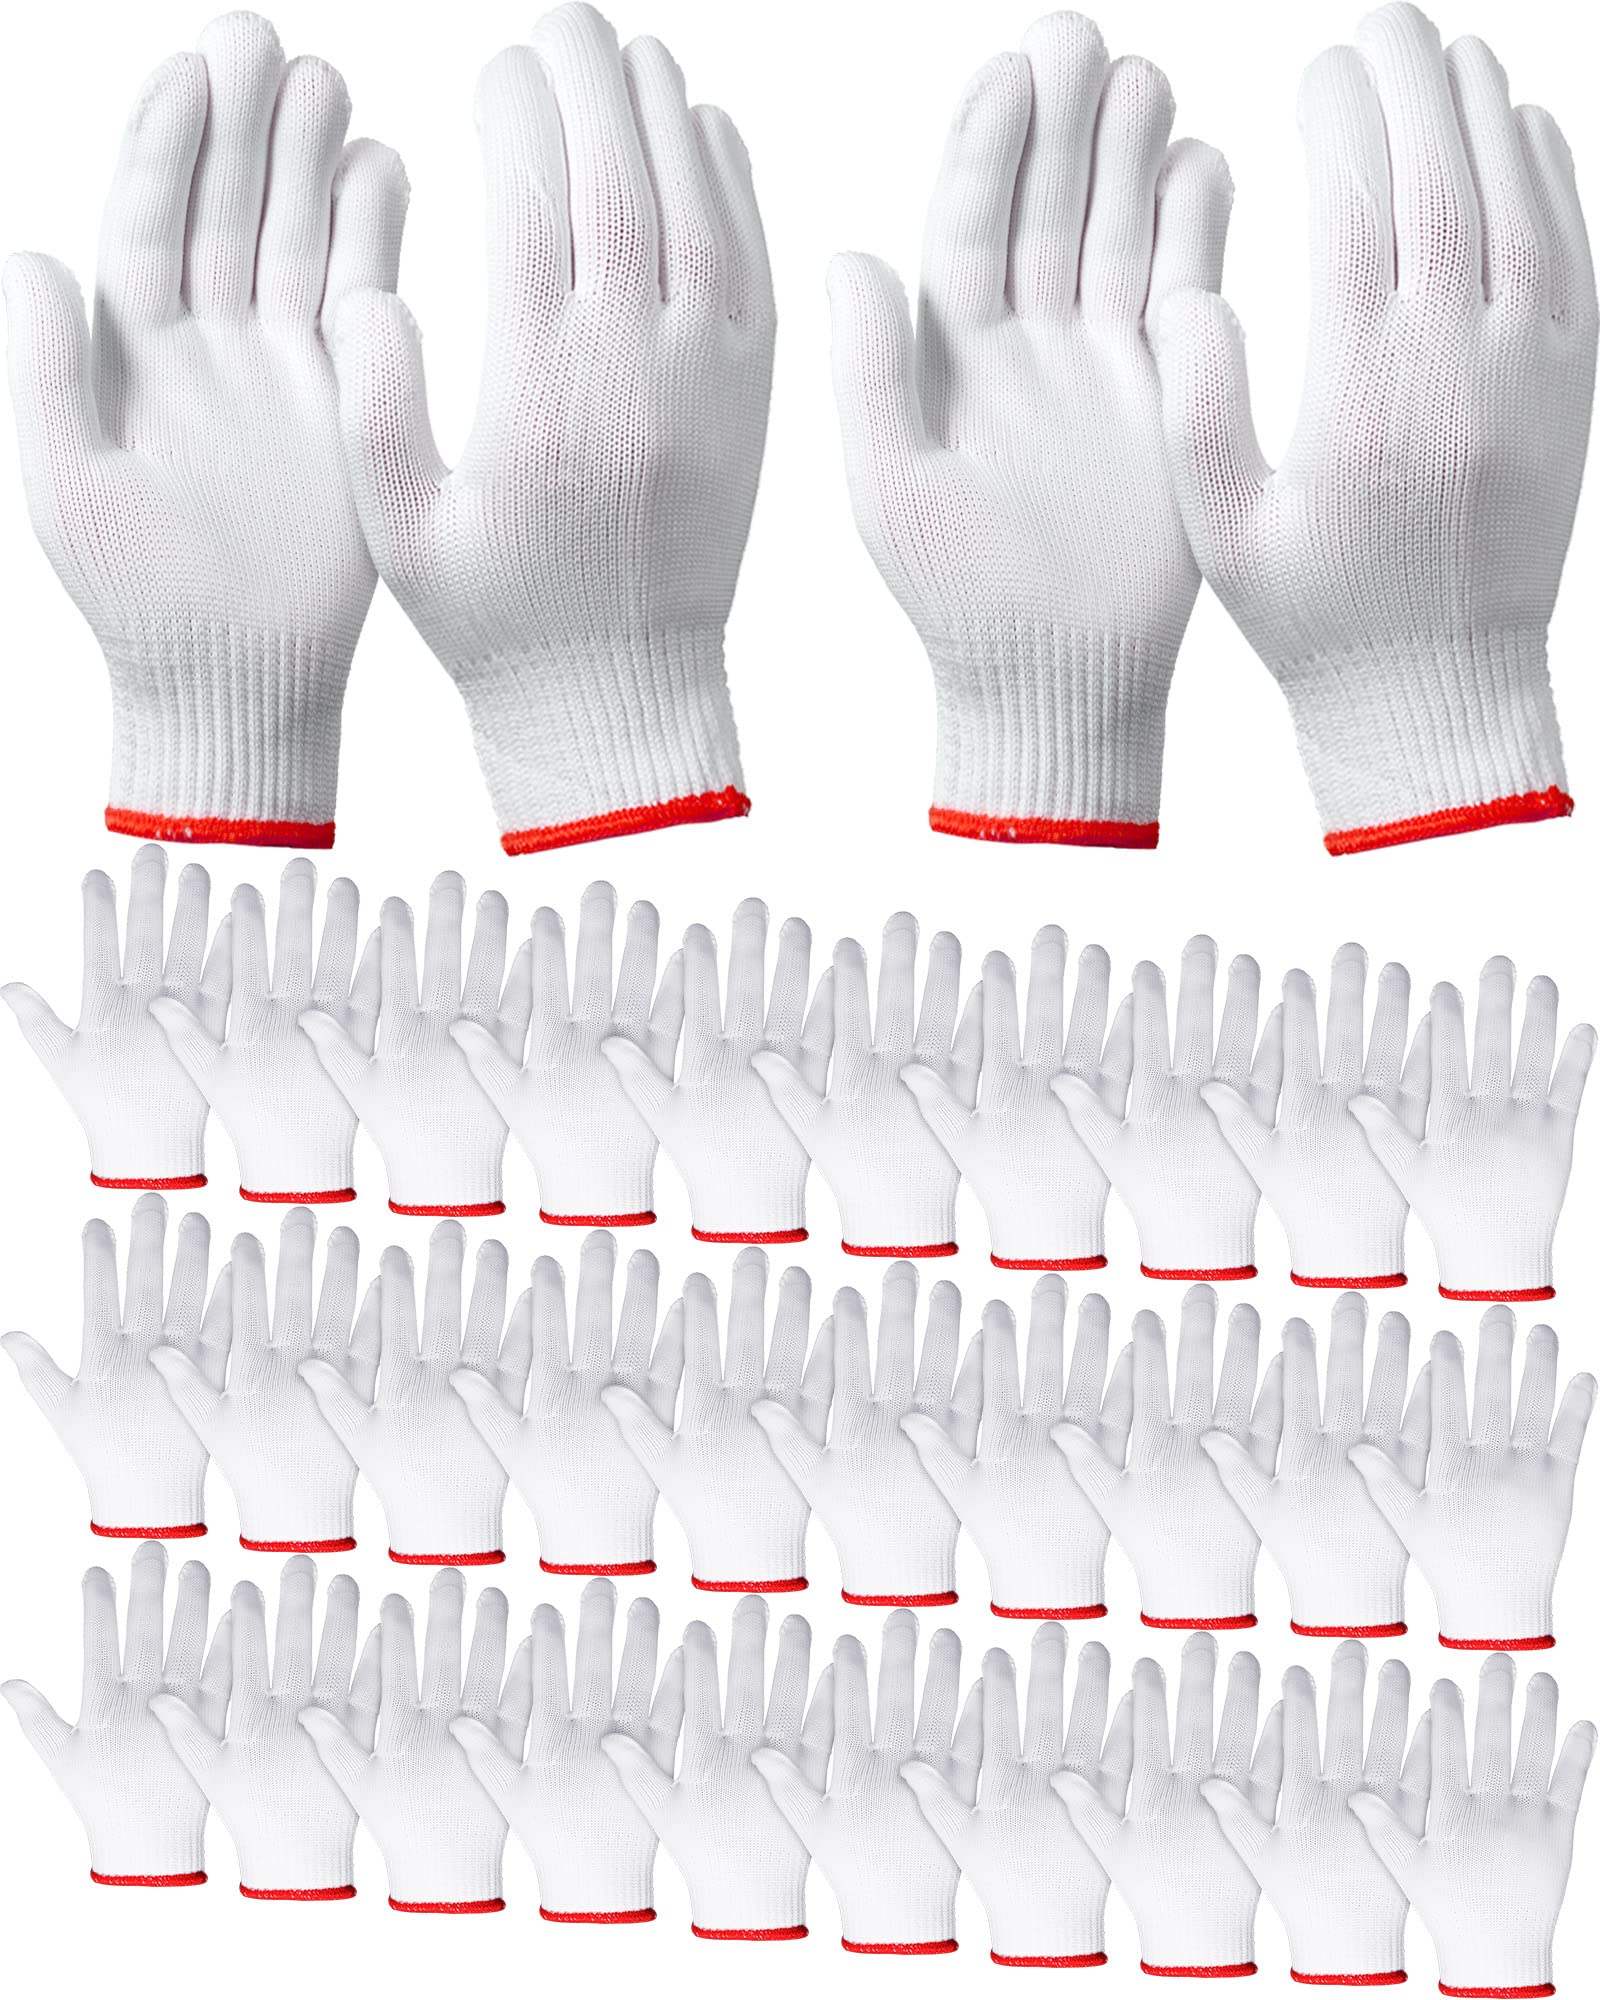 SATINIOR 36 Pairs Hand Work Gloves White Cotton Liners Gloves Safety Work Gloves Liners Men Women Cotton BBQ Gloves (Red Edging), One Size